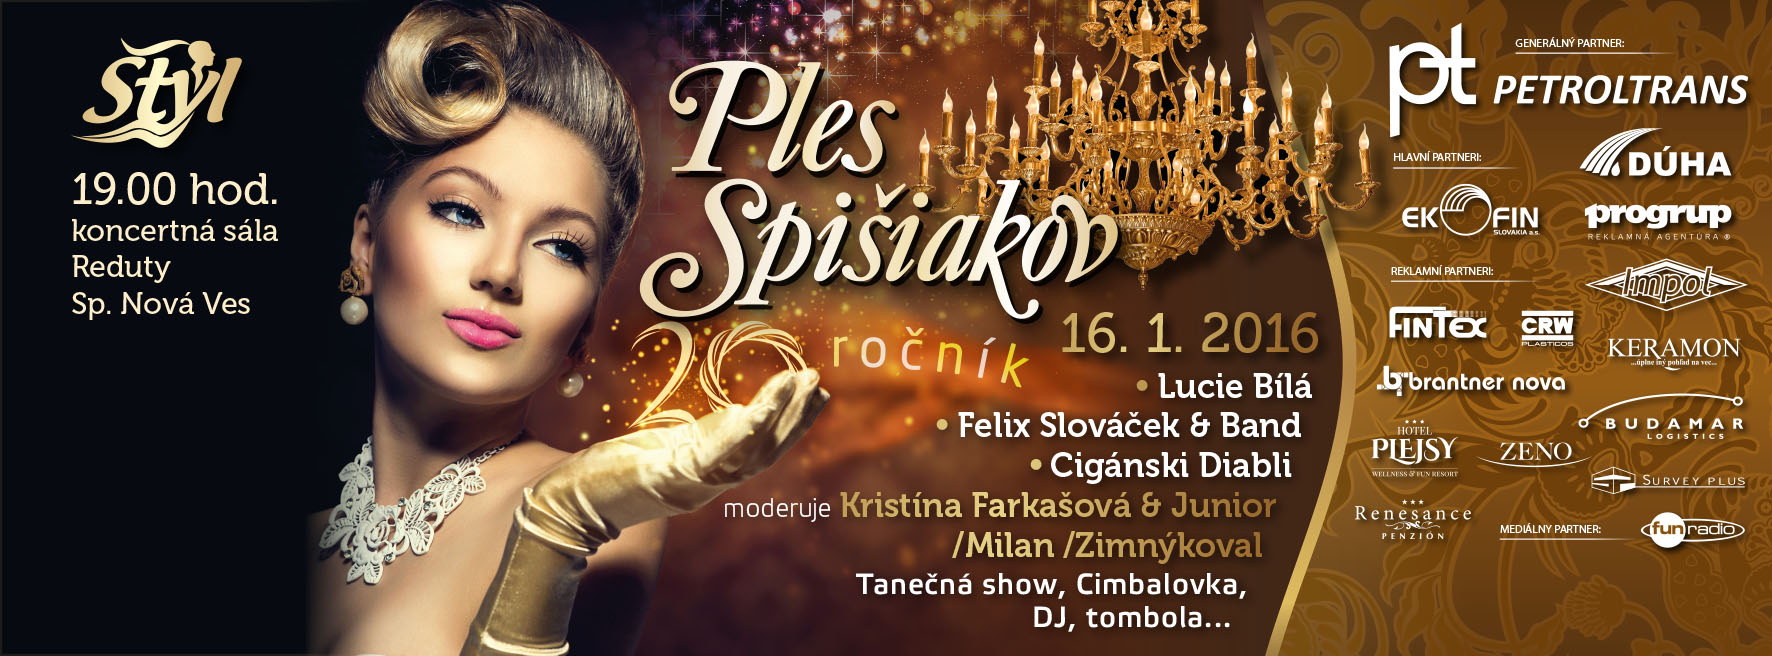 Ples Spiiakov 2016 - 20. ronk